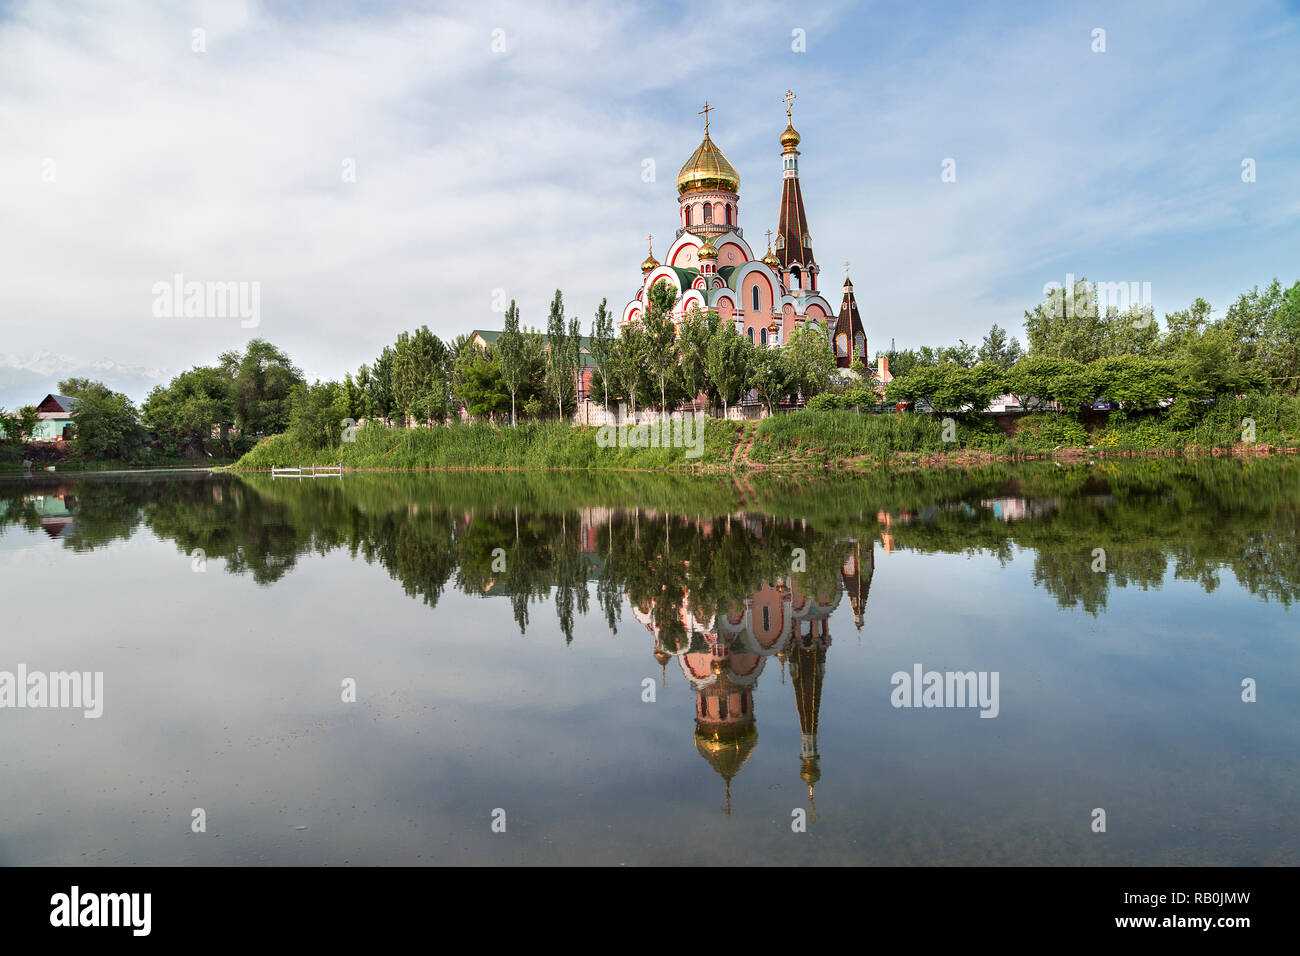 Chiesa russa ortodossa conosciuta come chiesa di esaltazione della Santa Croce e la sua riflessione in Almaty, Kazakhstan Foto Stock